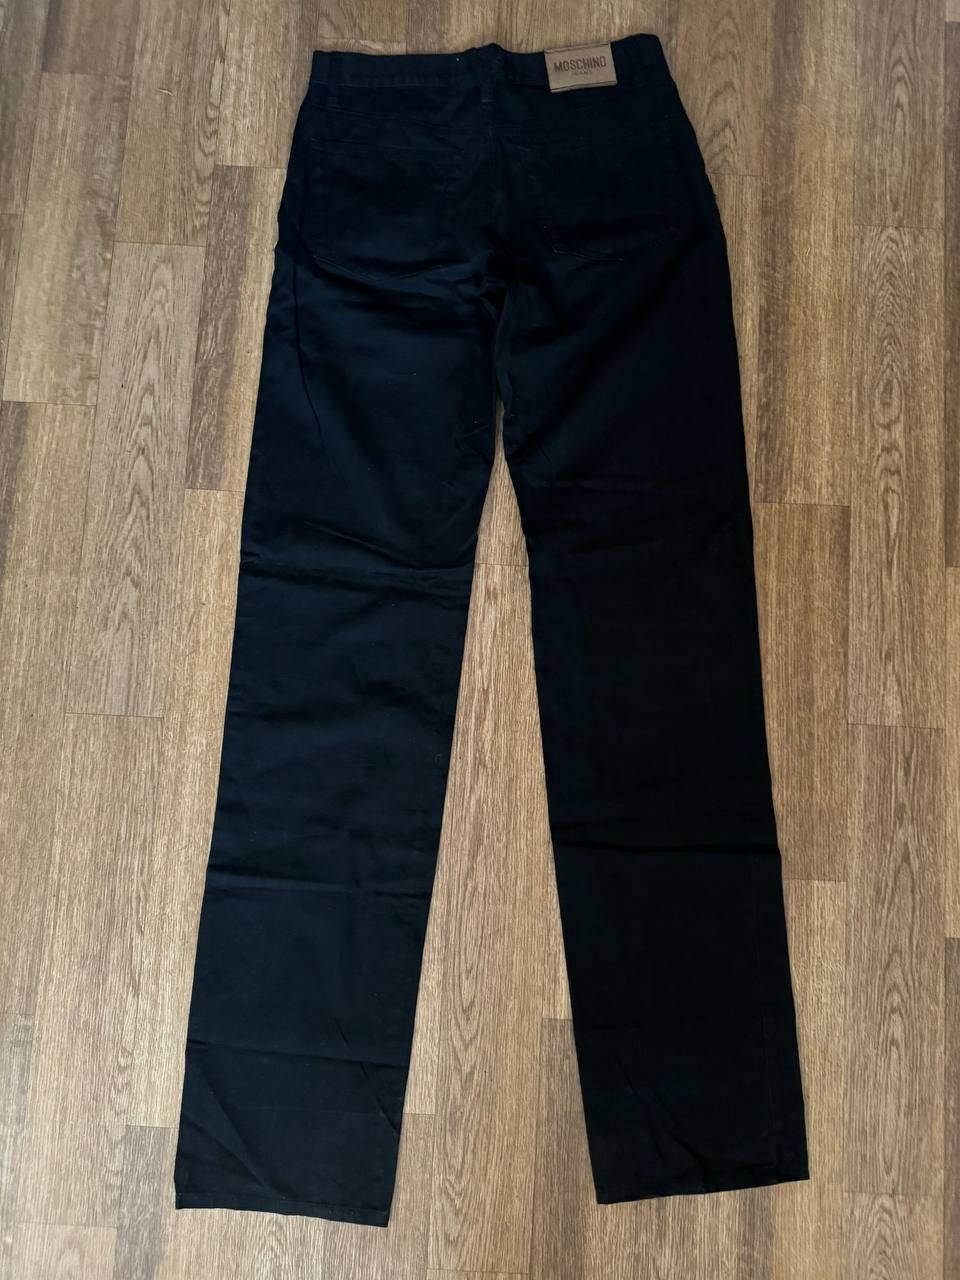 Штаны, джинсы, брюки мужские Moschino 31 размер